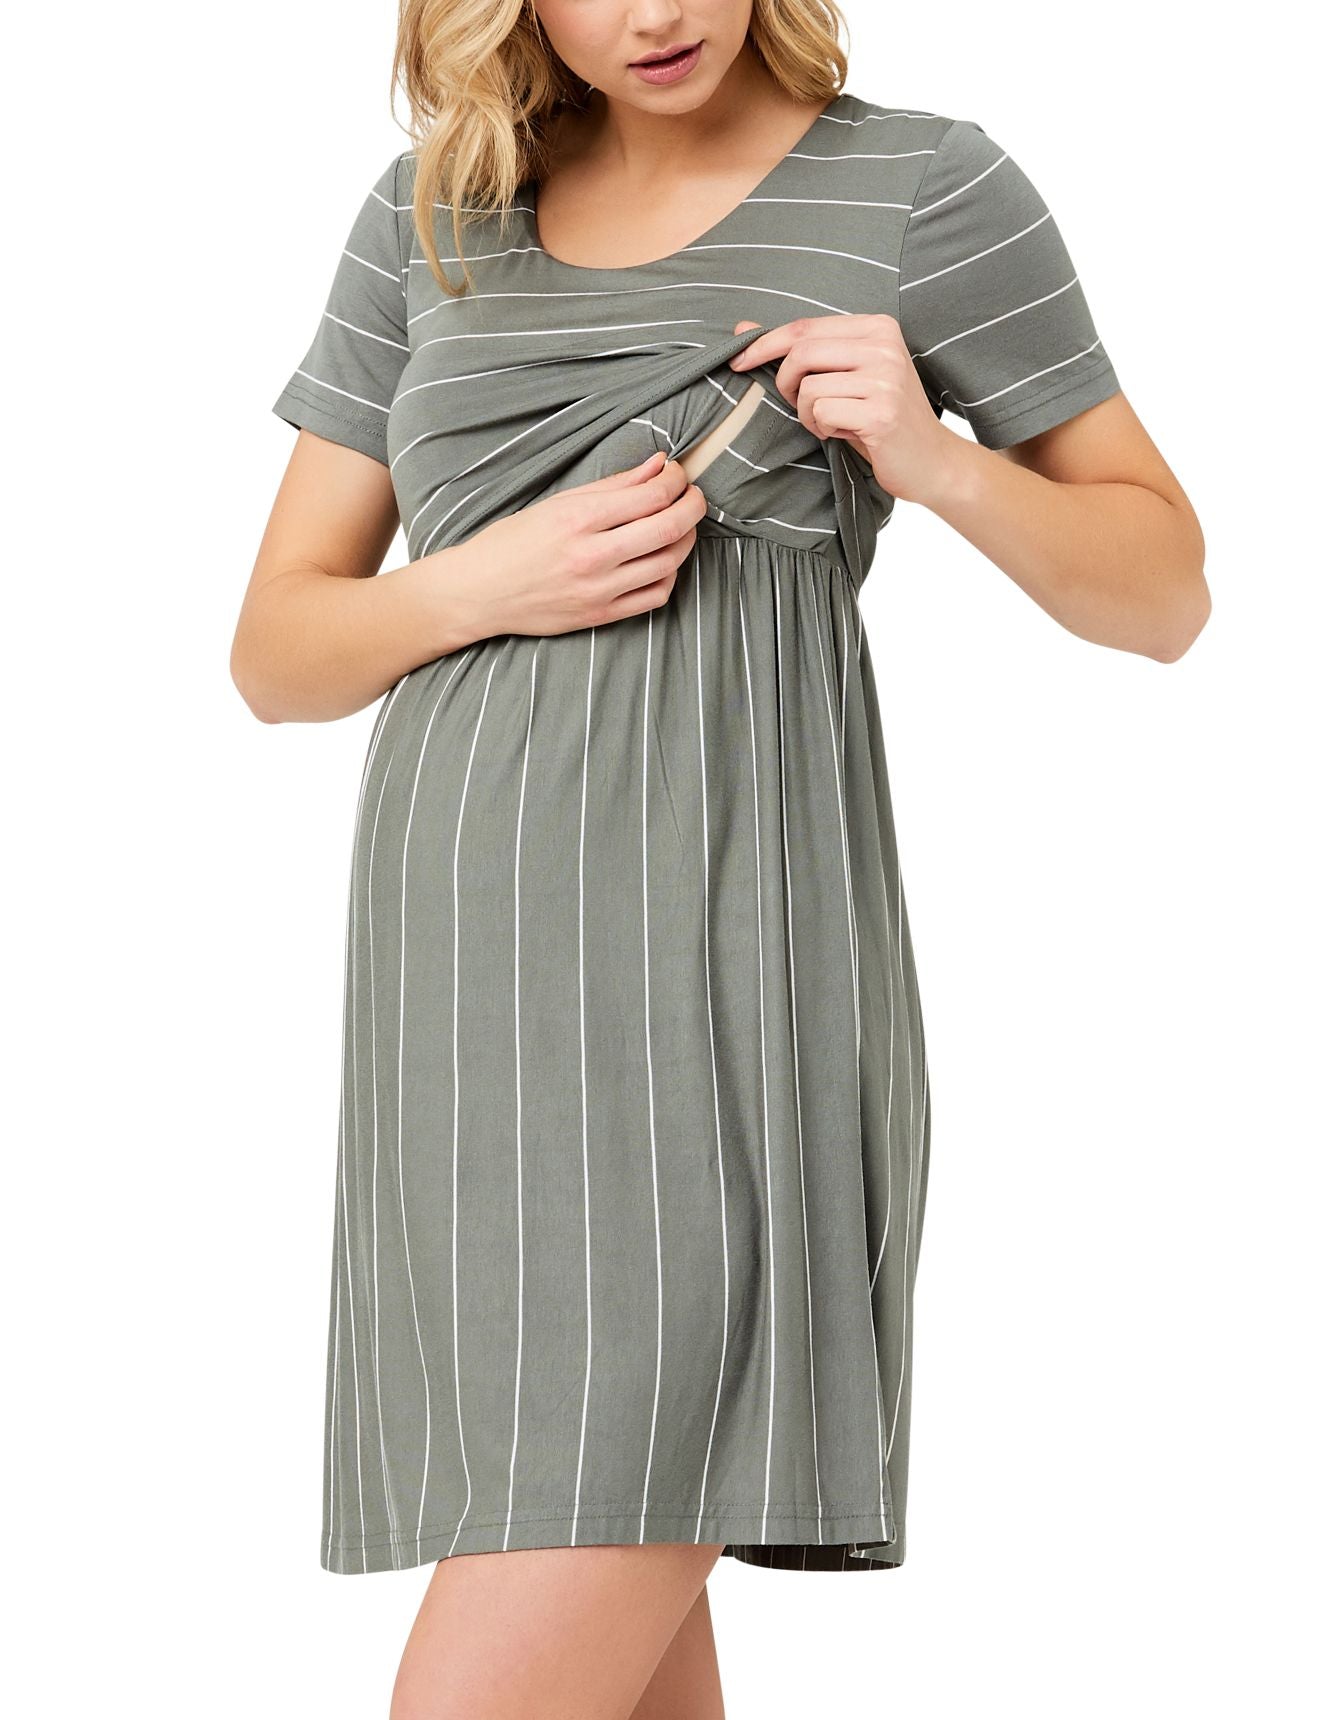 Maternity Nursing Dress in Olive Stripe